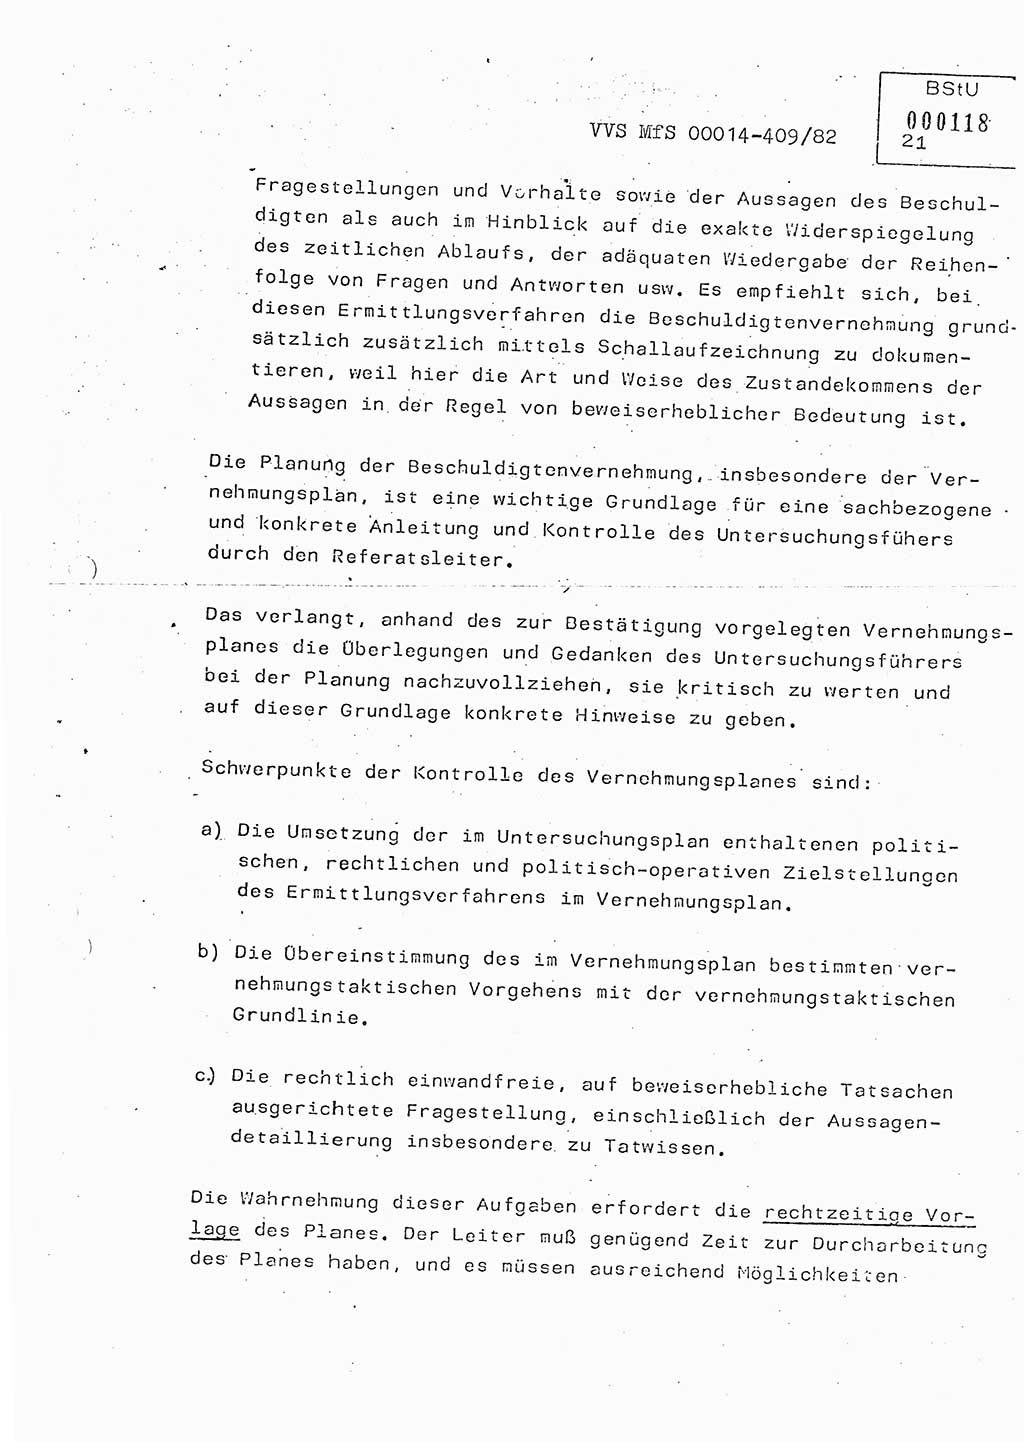 Lektion Ministerium für Staatssicherheit (MfS) [Deutsche Demokratische Republik (DDR)], Hauptabteilung (HA) Ⅸ, Vertrauliche Verschlußsache (VVS) o014-409/82, Berlin 1982, Seite 21 (Lekt. MfS DDR HA Ⅸ VVS o014-409/82 1982, S. 21)